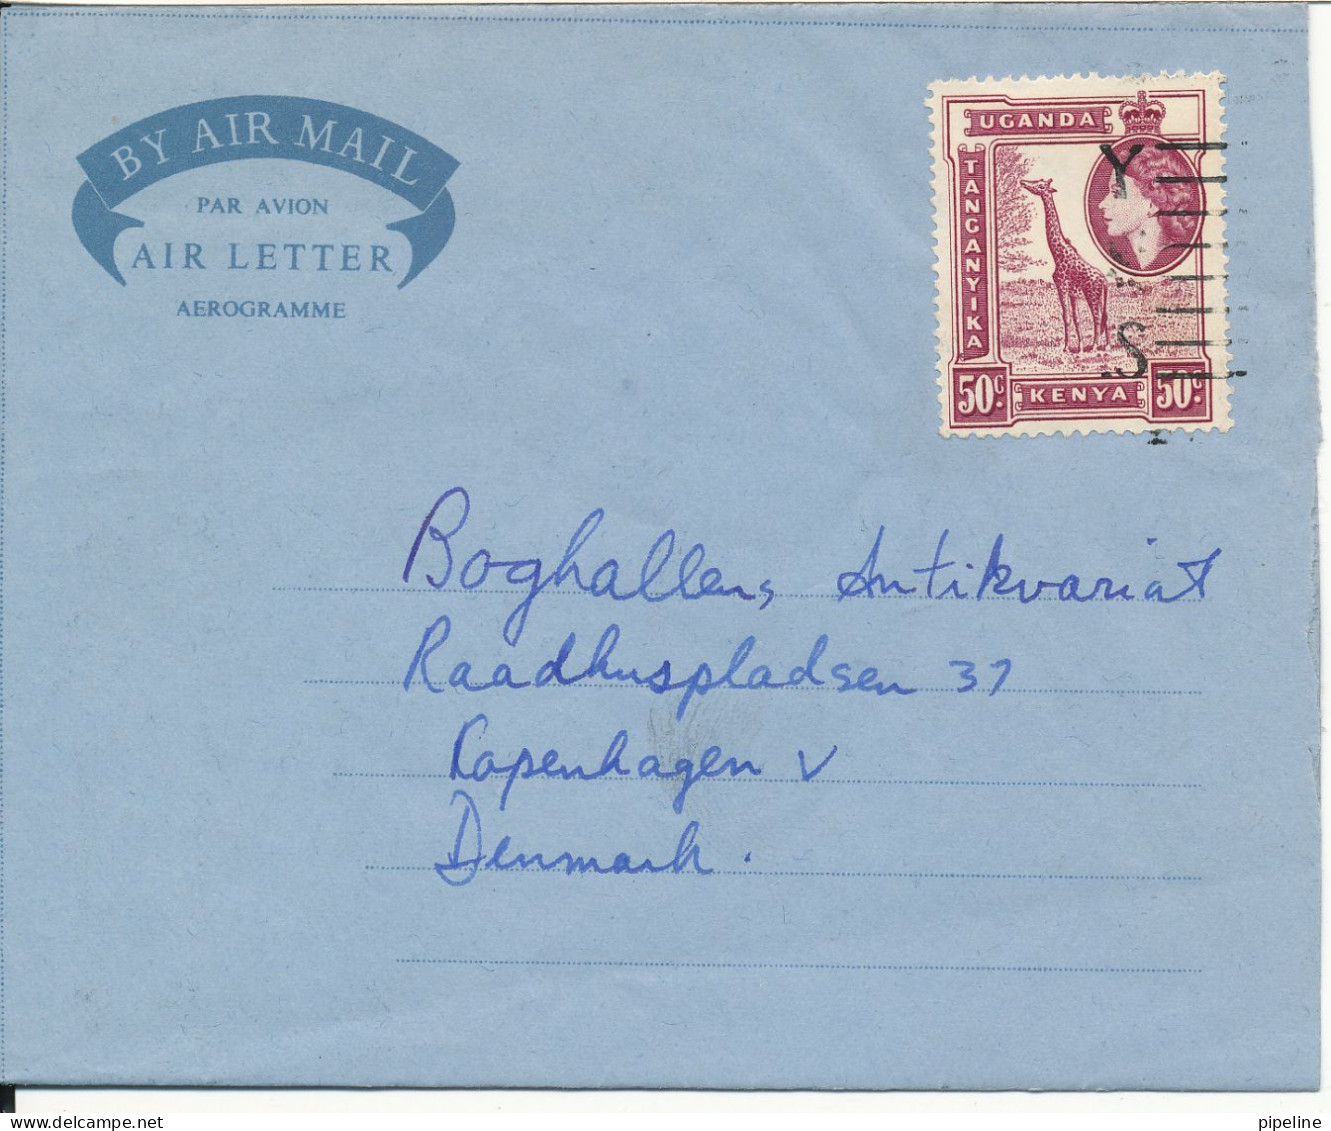 Kenya - Uganda - Tanganyika Aerogramme Sent To Denmark Nairobi 17-12-1956 - Kenya, Uganda & Tanganyika